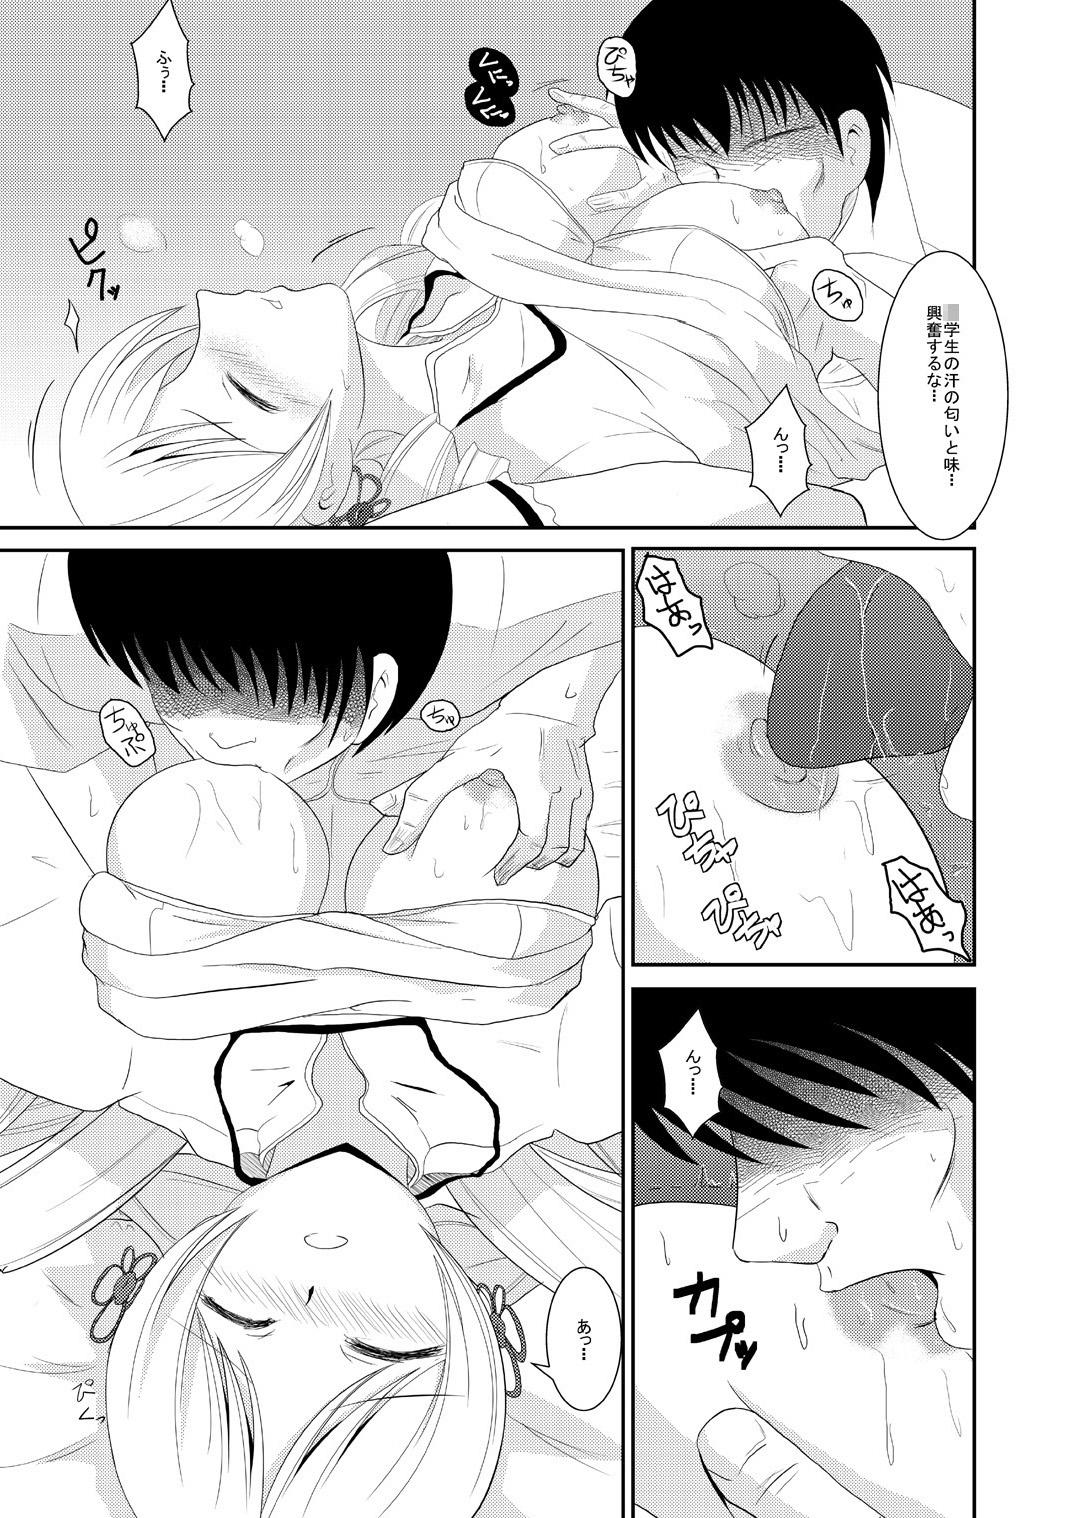 Transexual Jitsuroku Rape "Watashitachi ga Shoujo Janaku Natta hi" - Puella magi madoka magica Fingering - Page 12